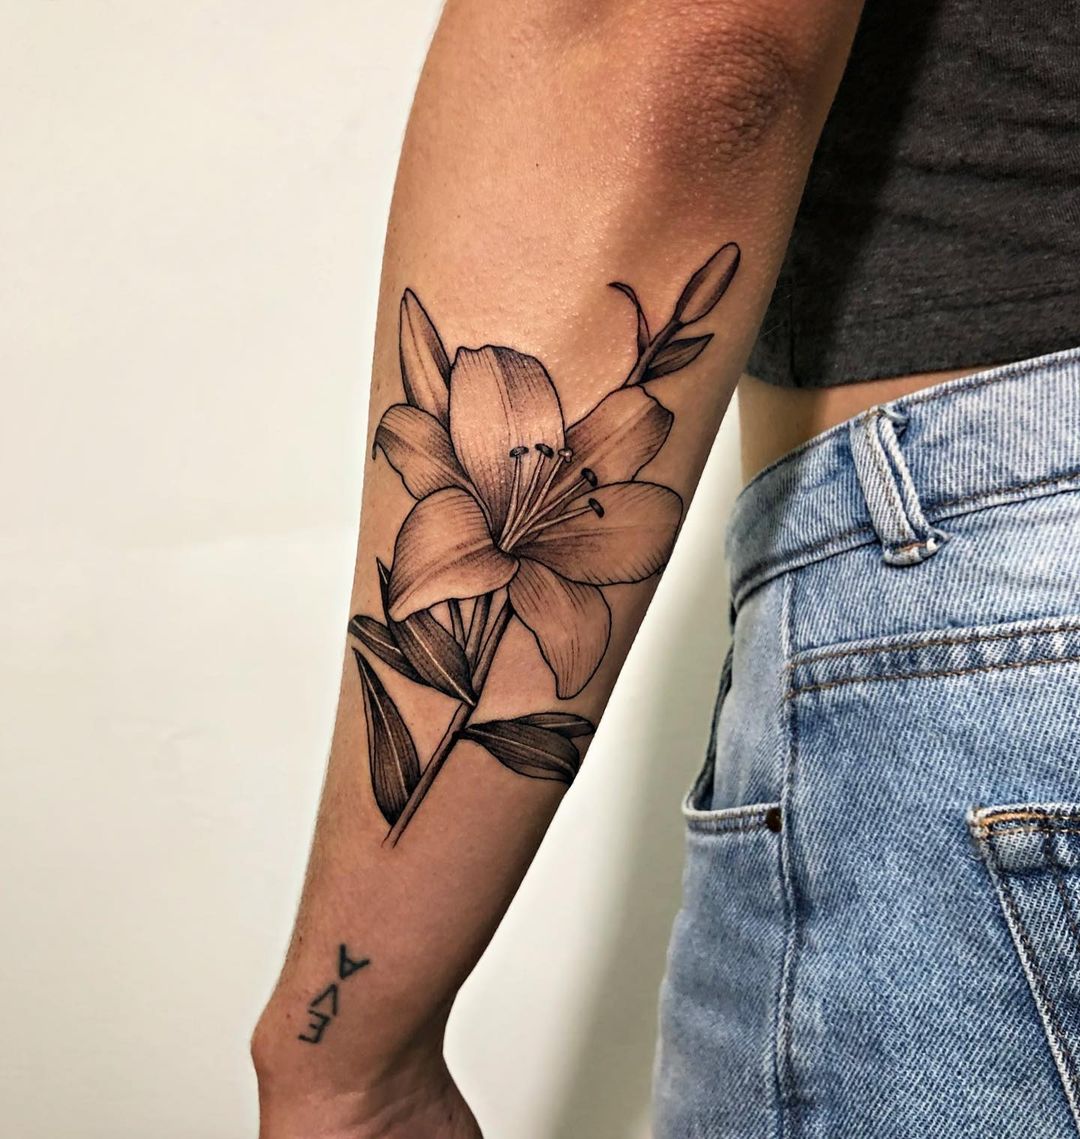 Lily Pad Tattoo Idea